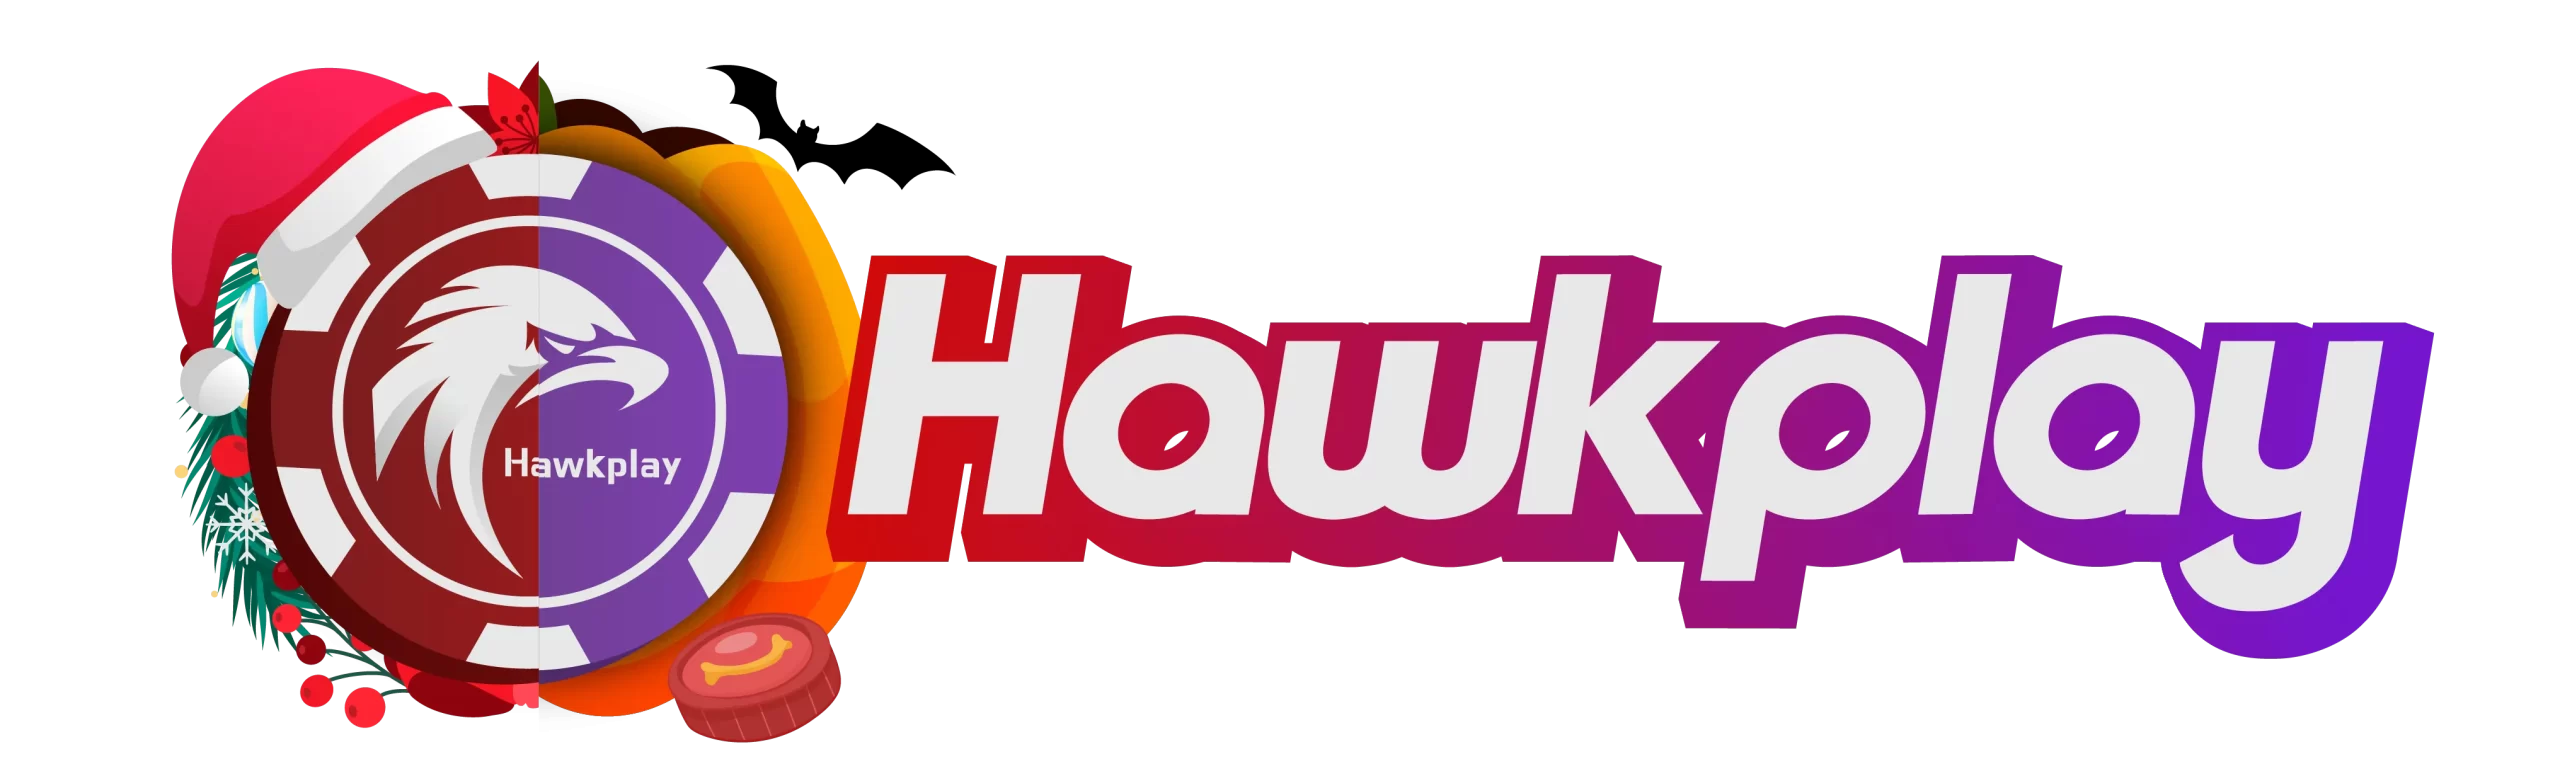 Hawkplay 